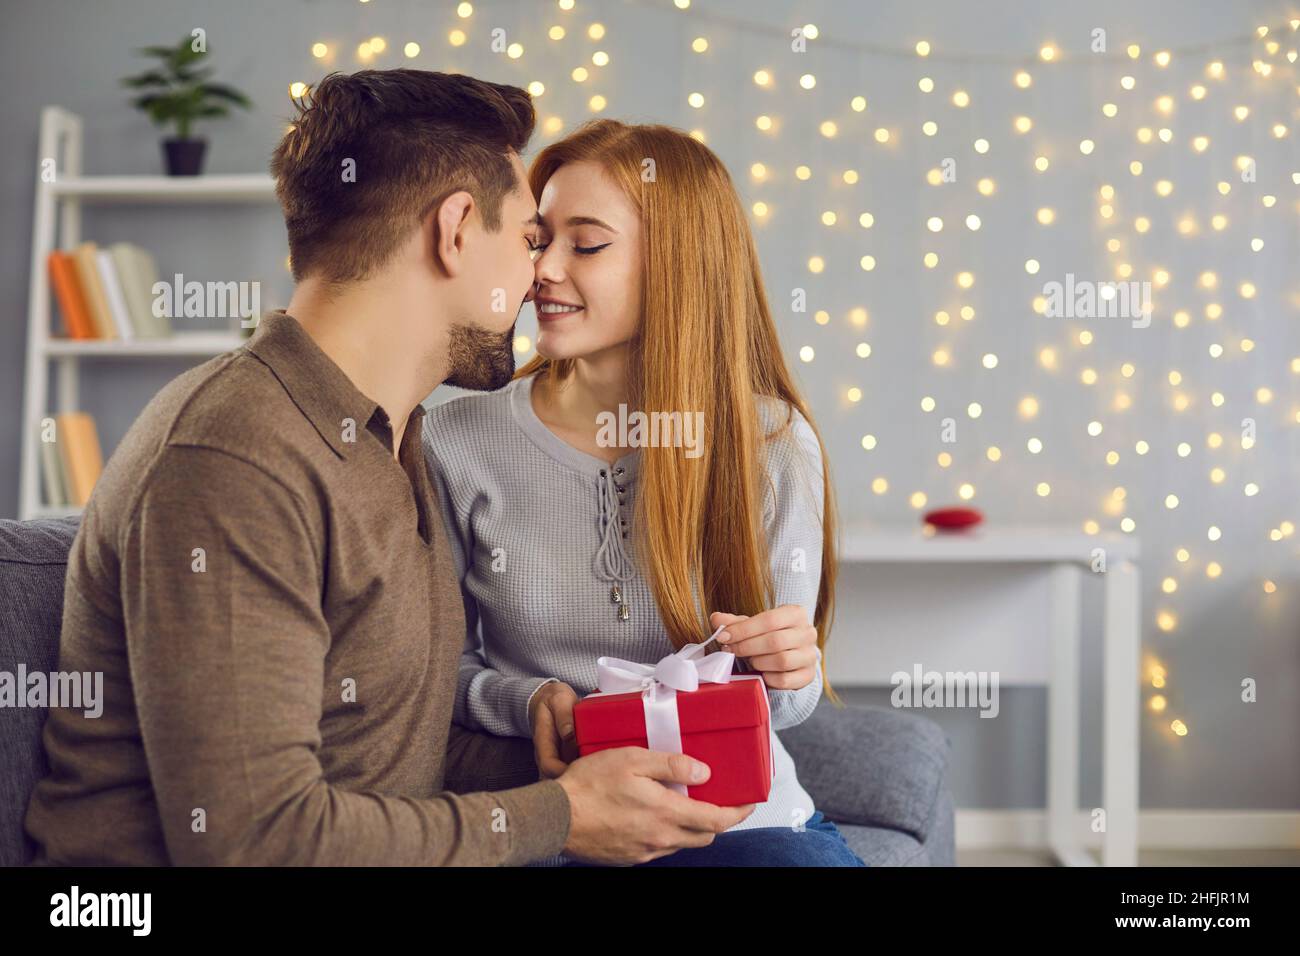 Un jeune couple affectueux s'embrasse pendant les cadeaux et les fêtes à la maison Banque D'Images